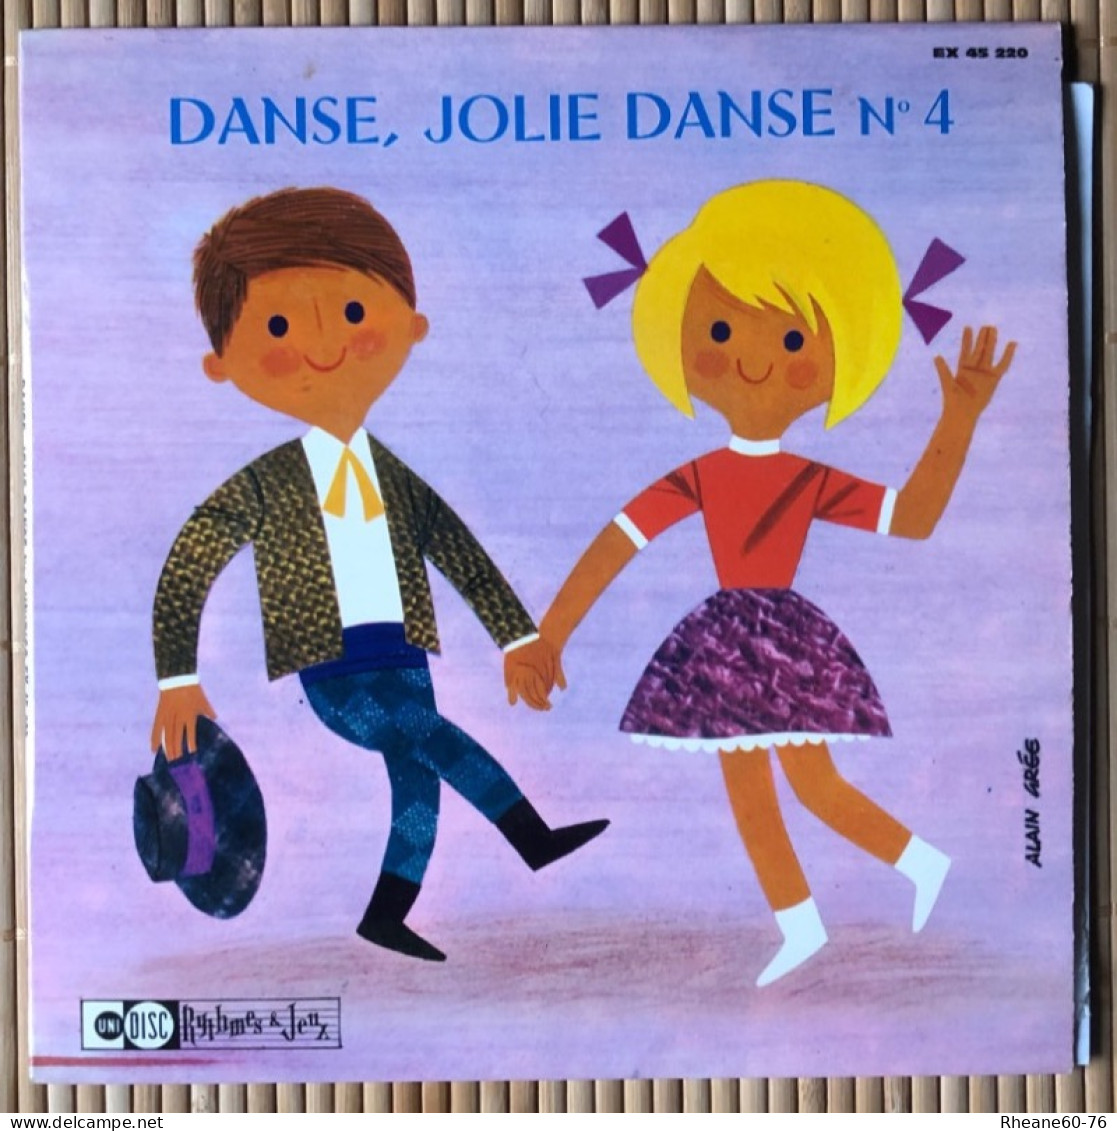 Unidisc 45T EP - EX 45220 - Danse, Jolie Danse N4 - Orchestre François Rauber - Formats Spéciaux